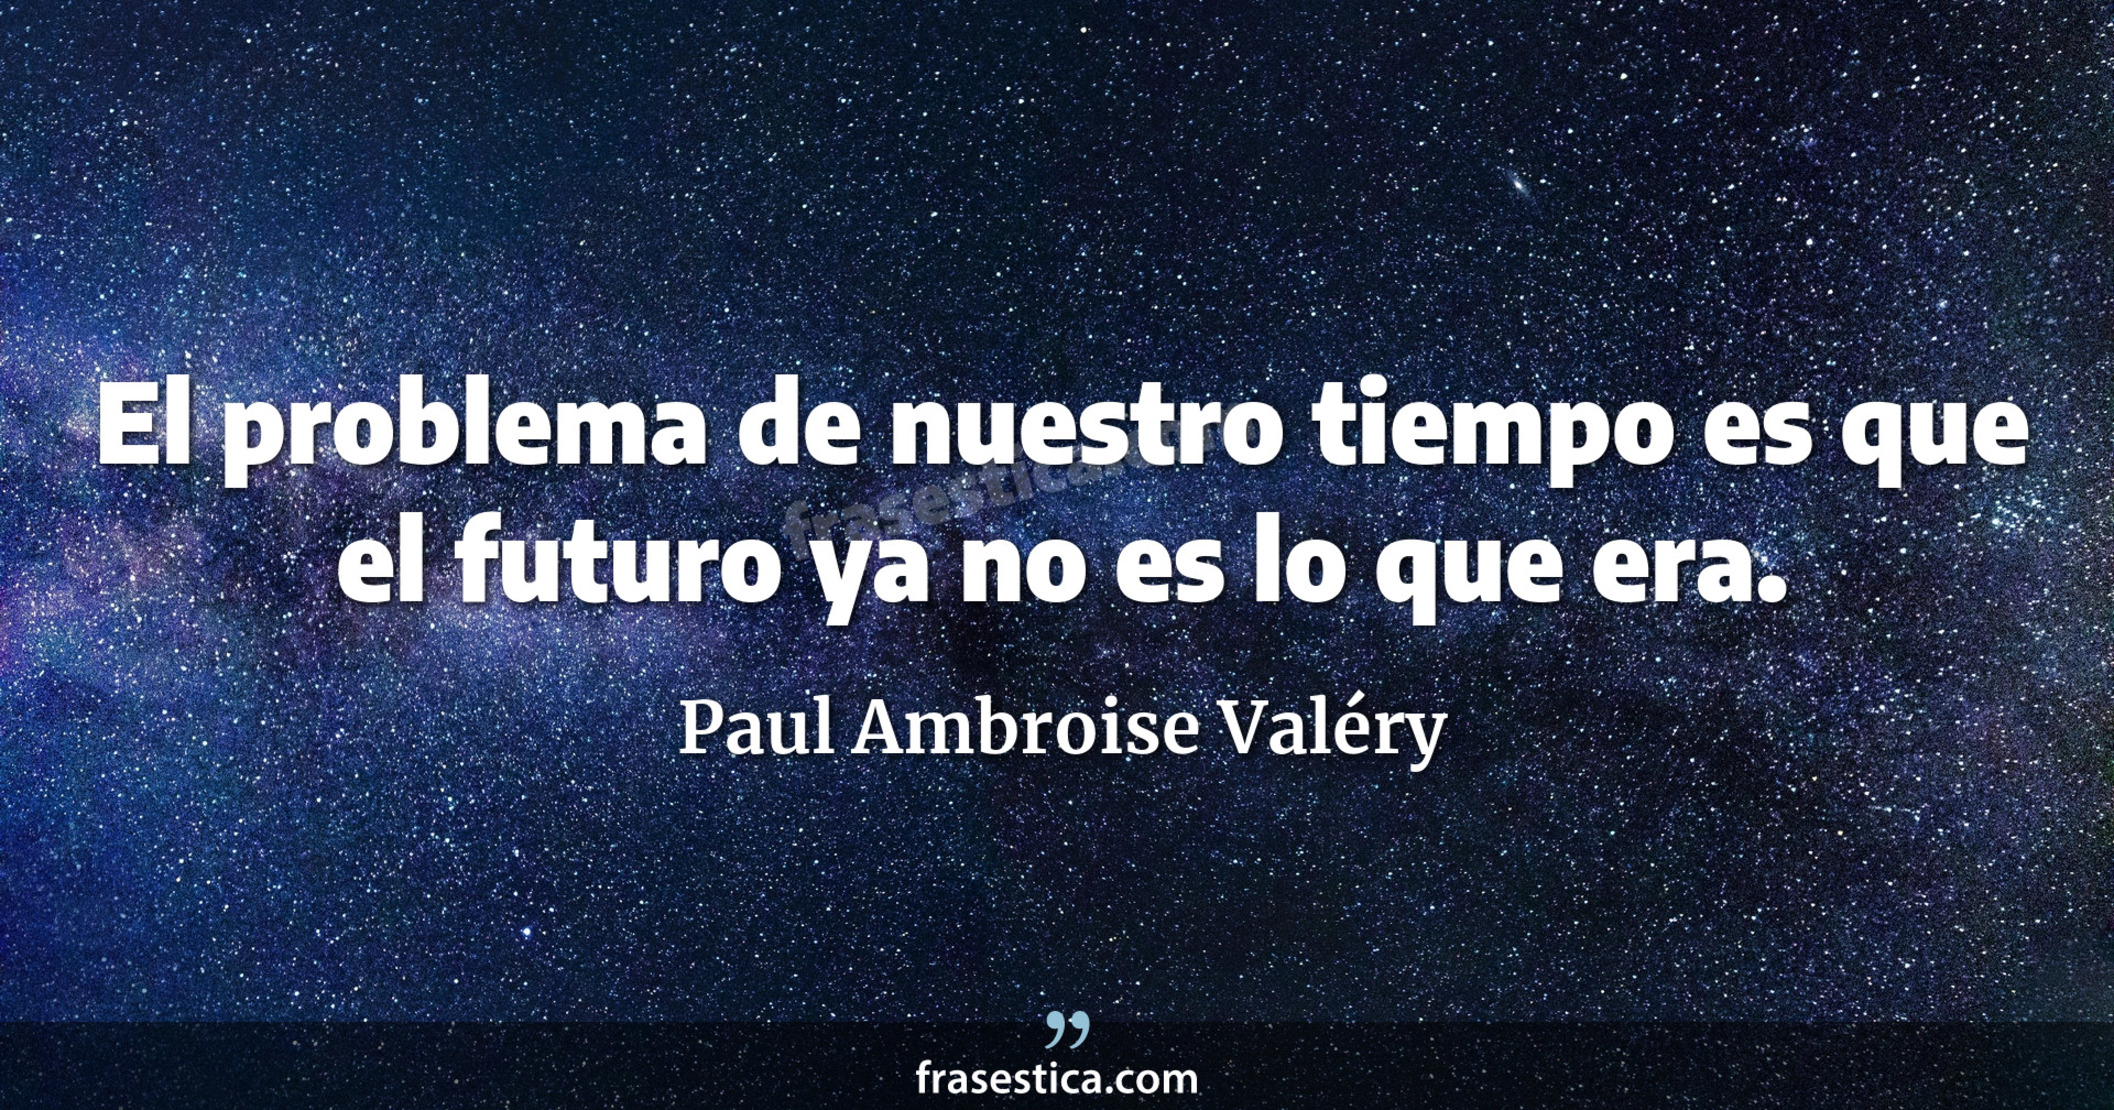 El problema de nuestro tiempo es que el futuro ya no es lo que era. - Paul Ambroise Valéry